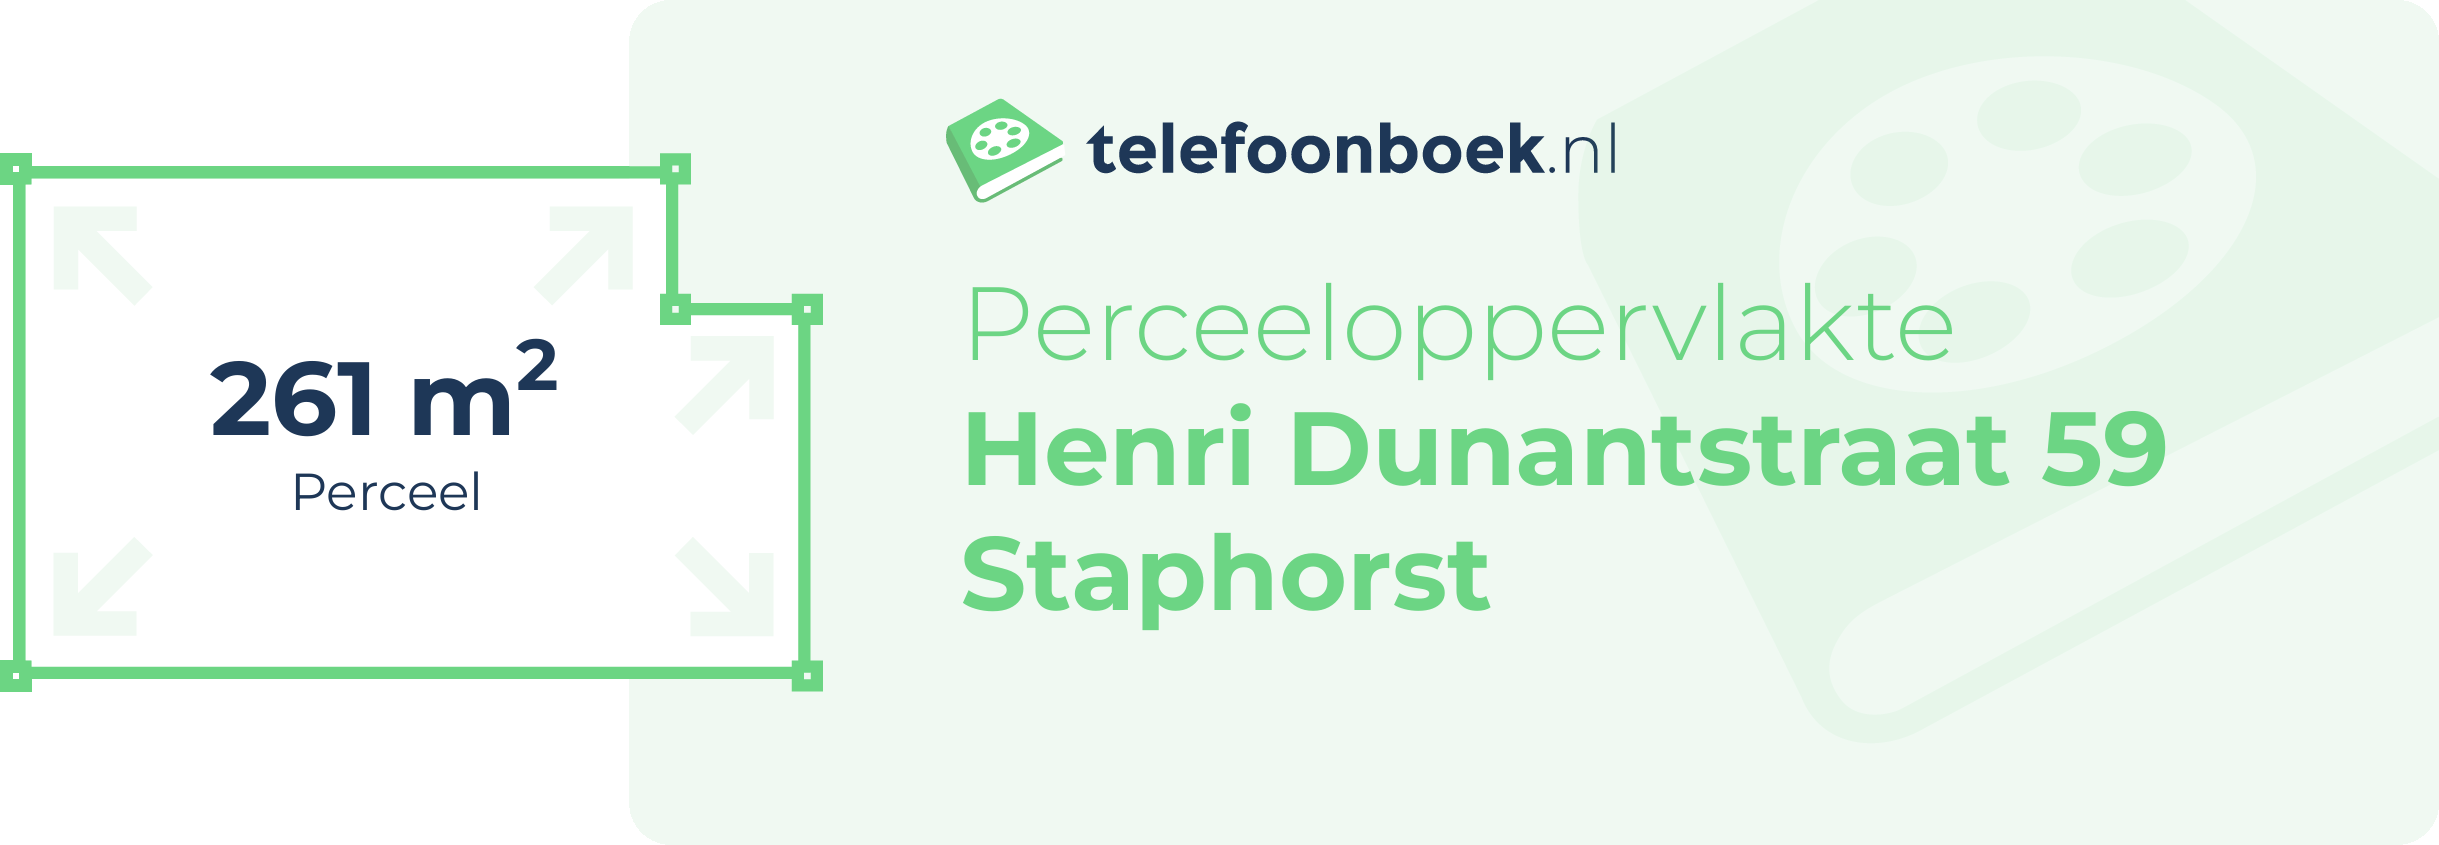 Perceeloppervlakte Henri Dunantstraat 59 Staphorst